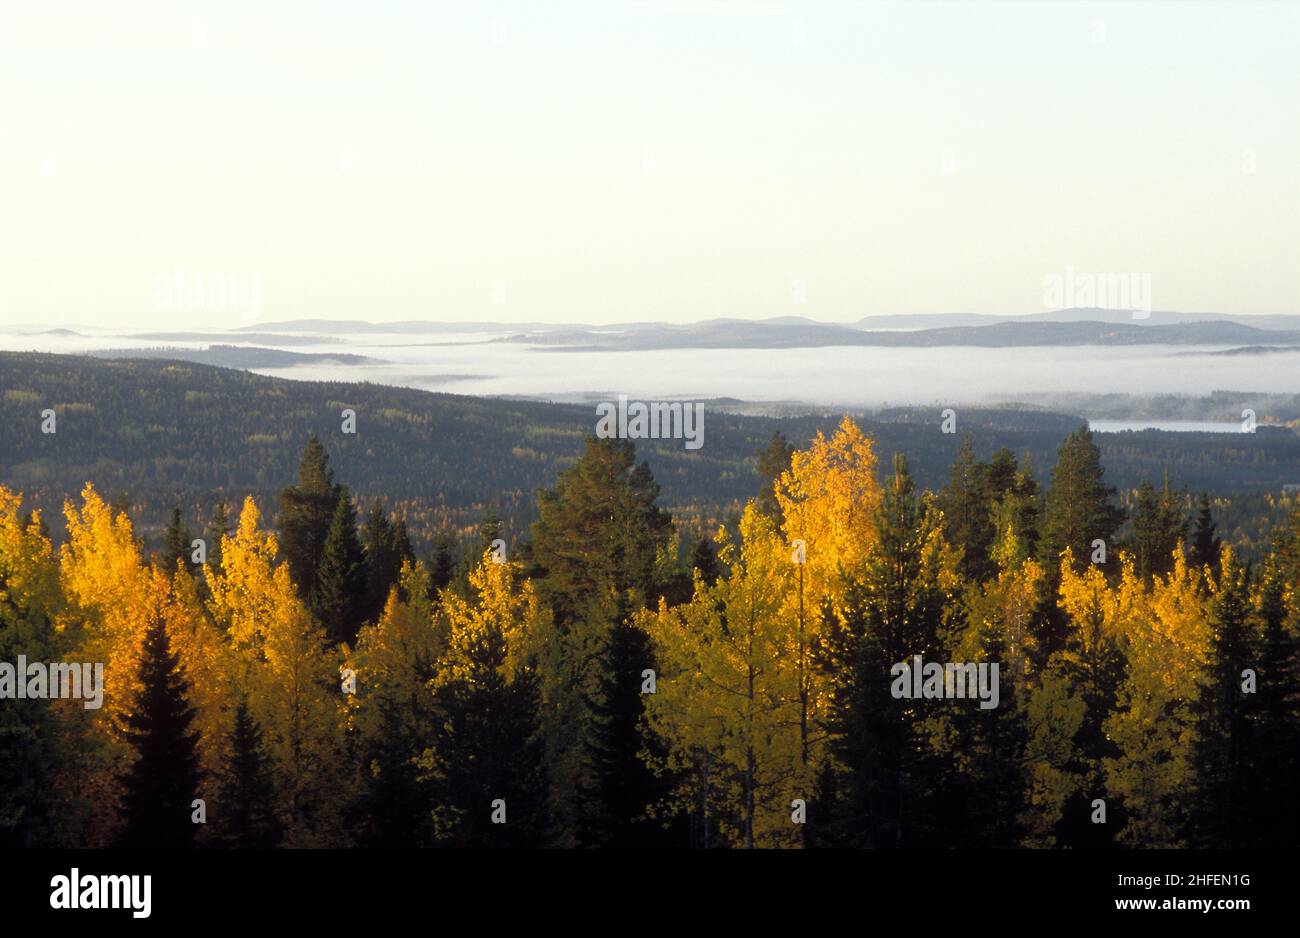 Vastos bosques en otoño, colores de otoño. Colinas, madera y sol. Analógico. Antes de la era de los molinos de viento industriales. Foto de stock